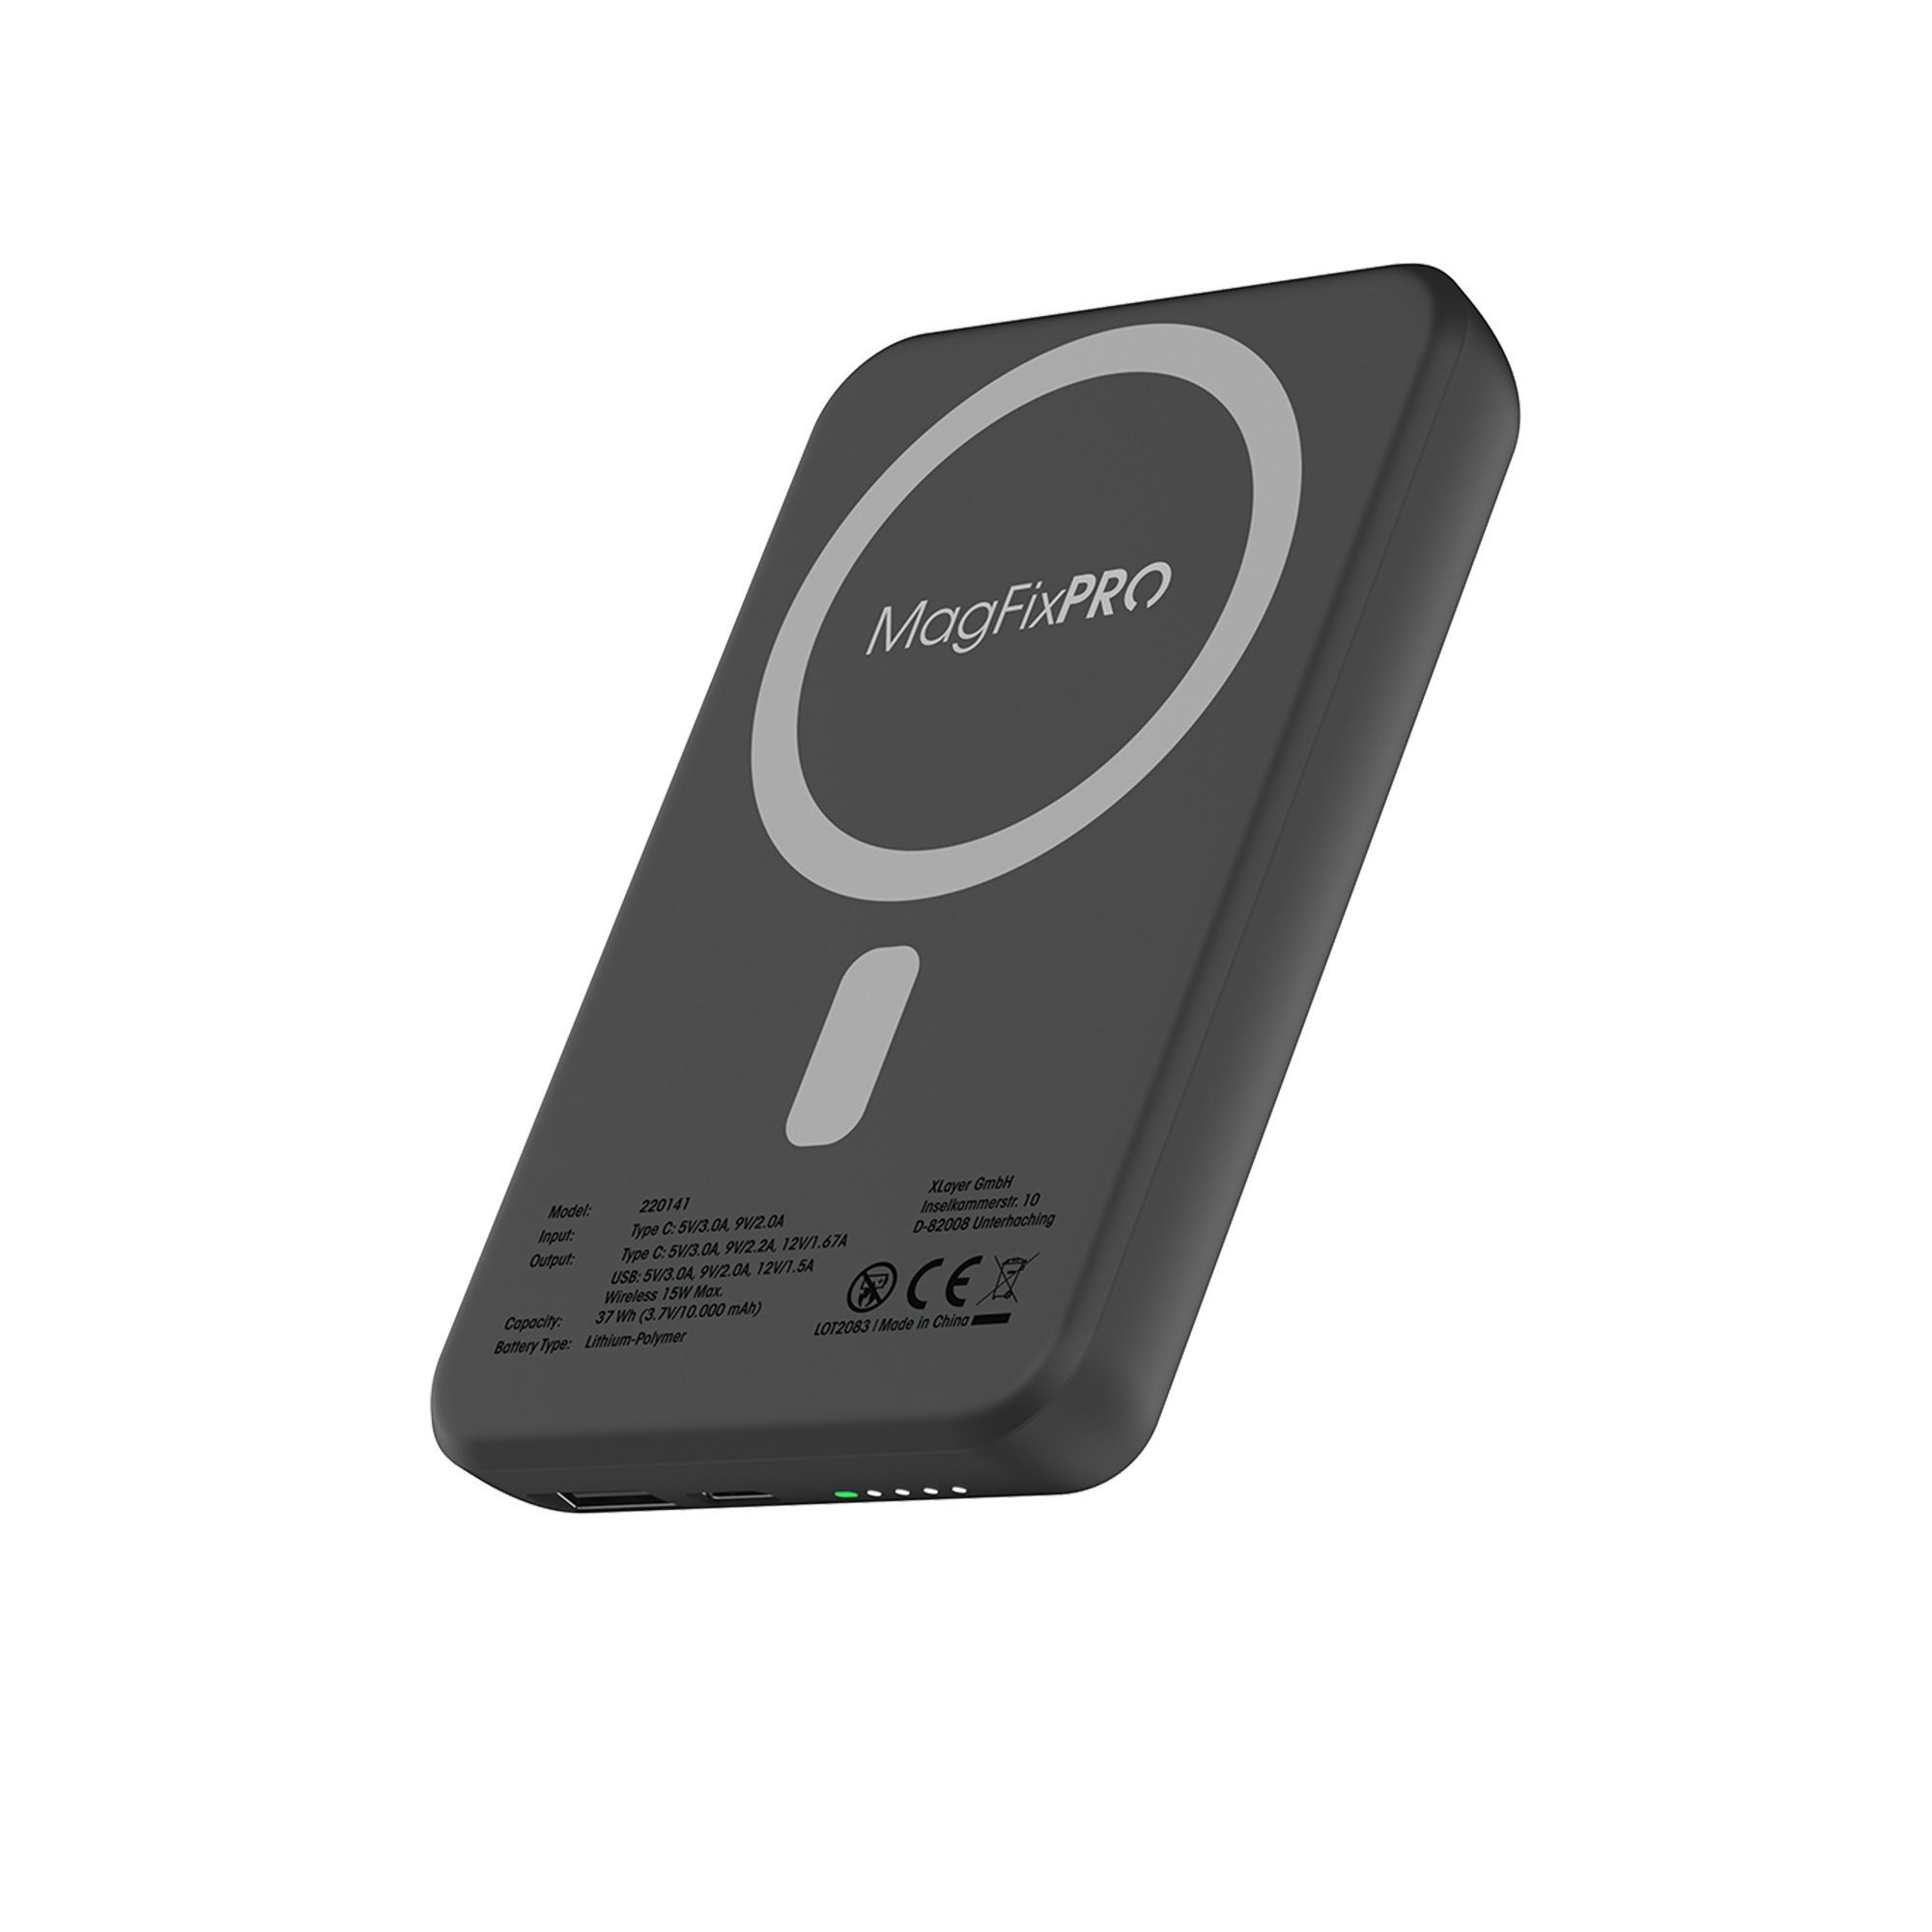 2.4A USB Zigarettenanzünder-Ladegerät + 1m Micro-USB-Kabel, Setty – Schwarz  - German